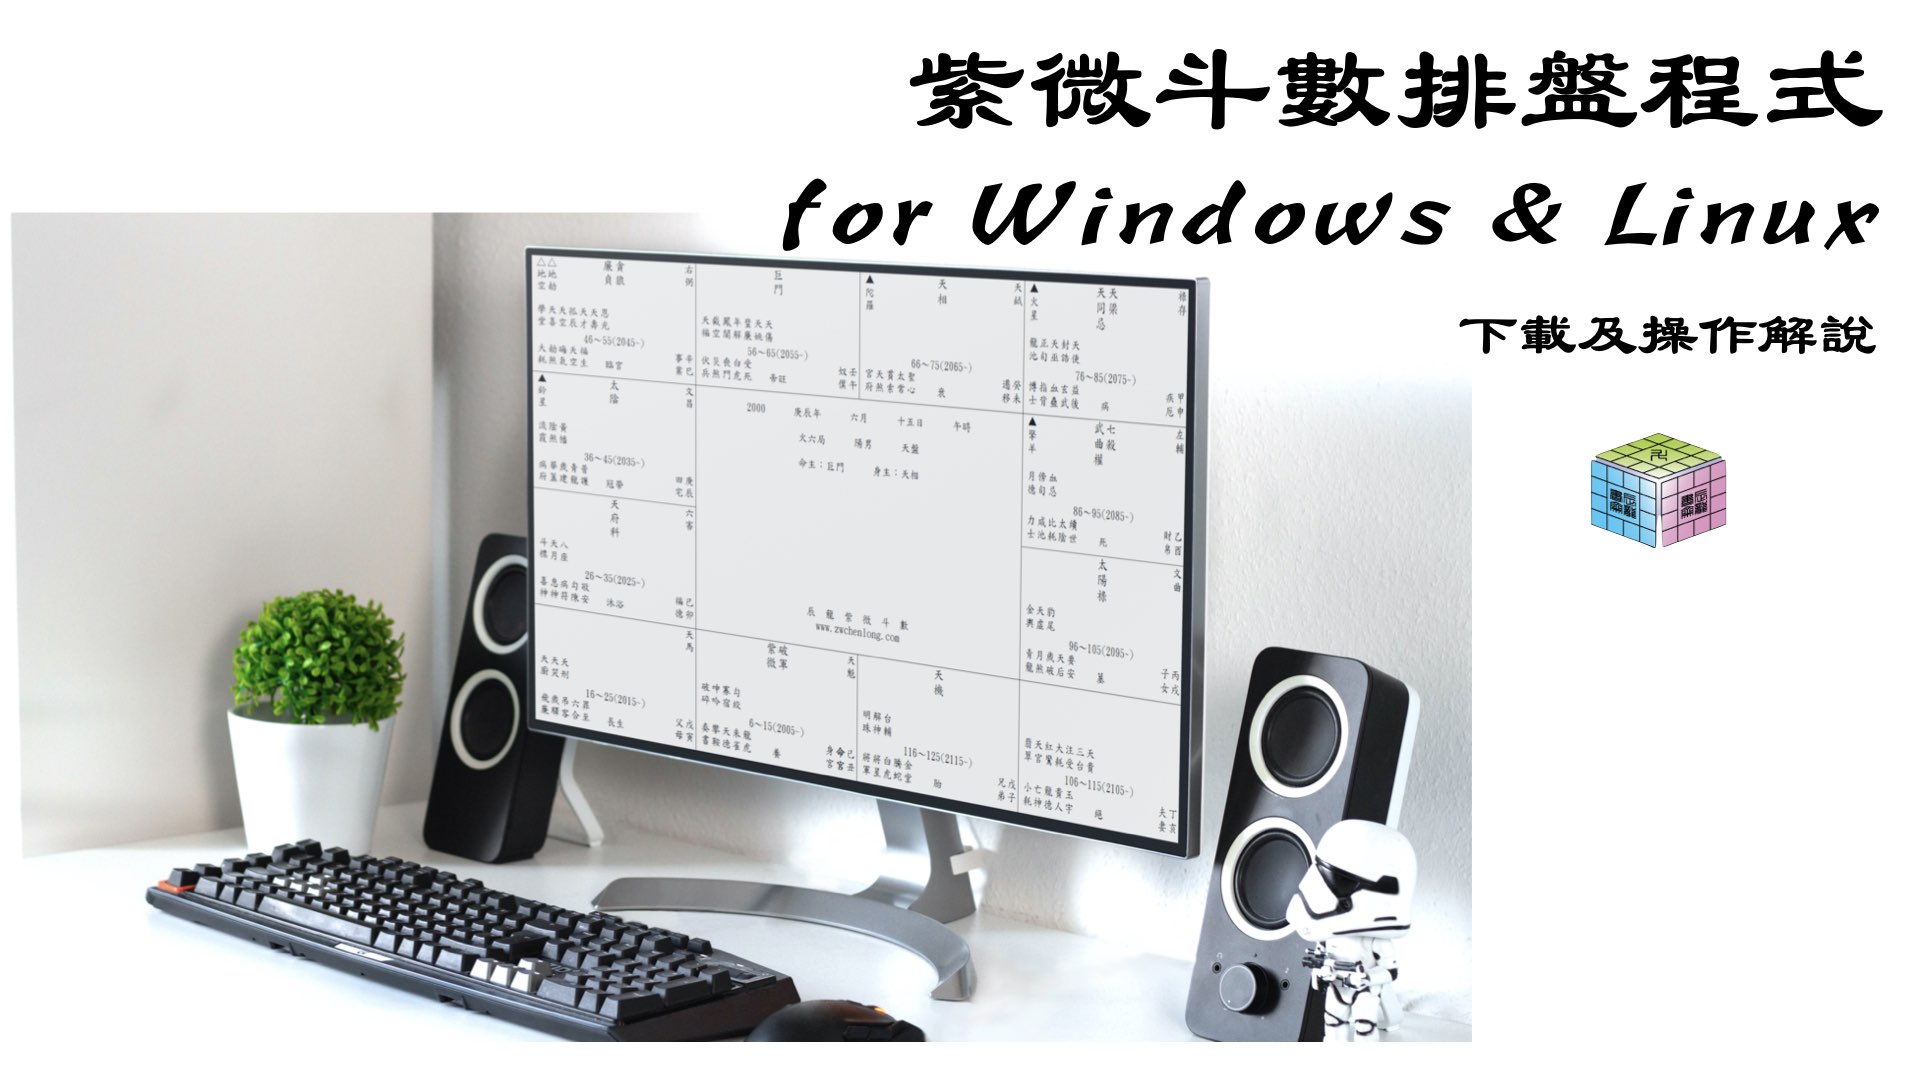 紫微斗數排盤程式下載及解說 for Windows & Linux